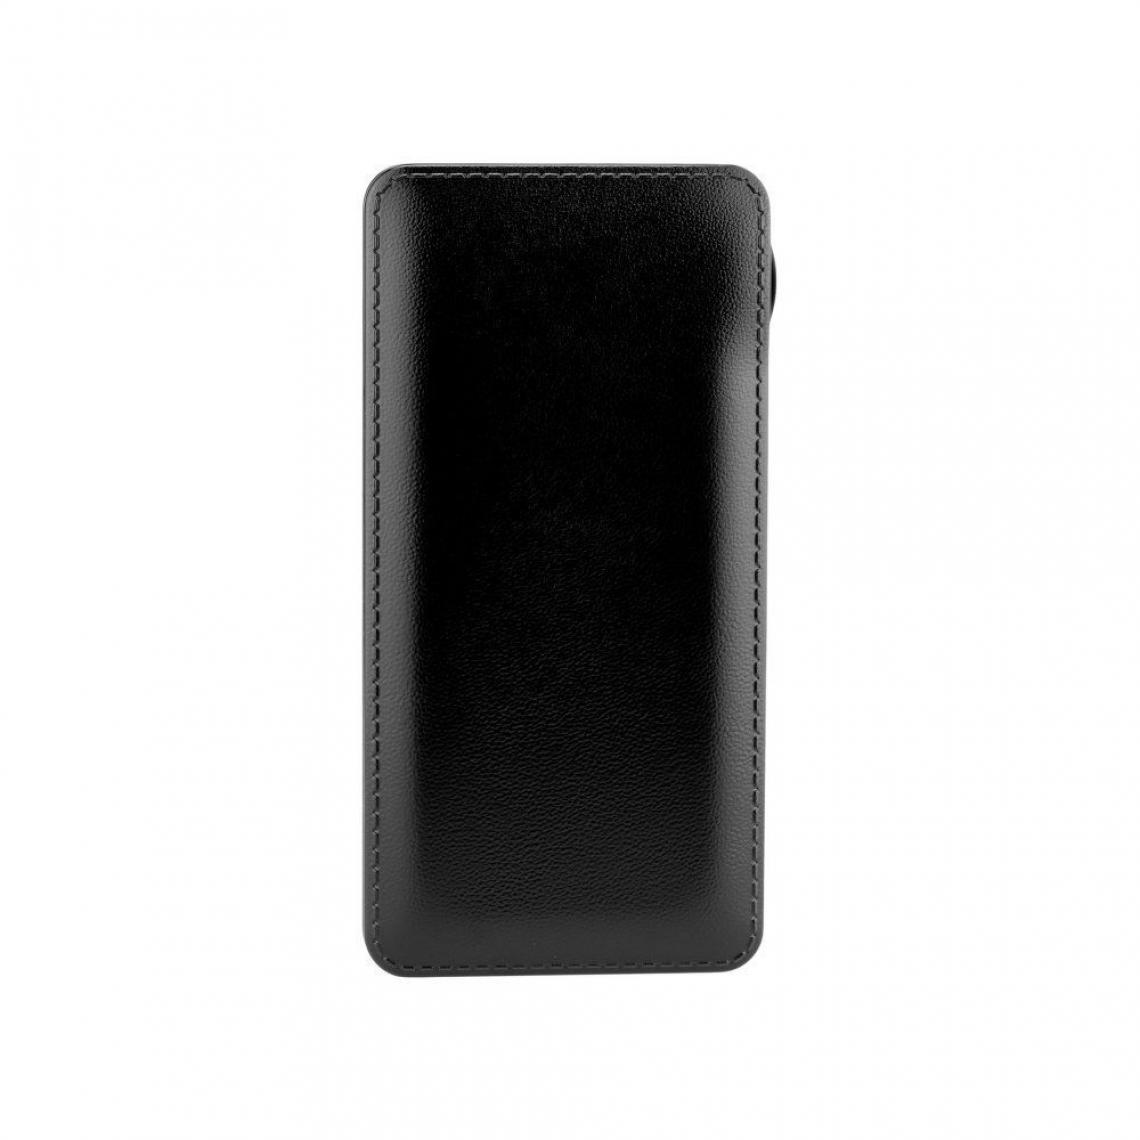 Ozzzo - Chargeur batterie externe 20000 mAh powerbank ozzzo noir pour SAMSUNG Galaxy C7 Pro C7010 - Autres accessoires smartphone